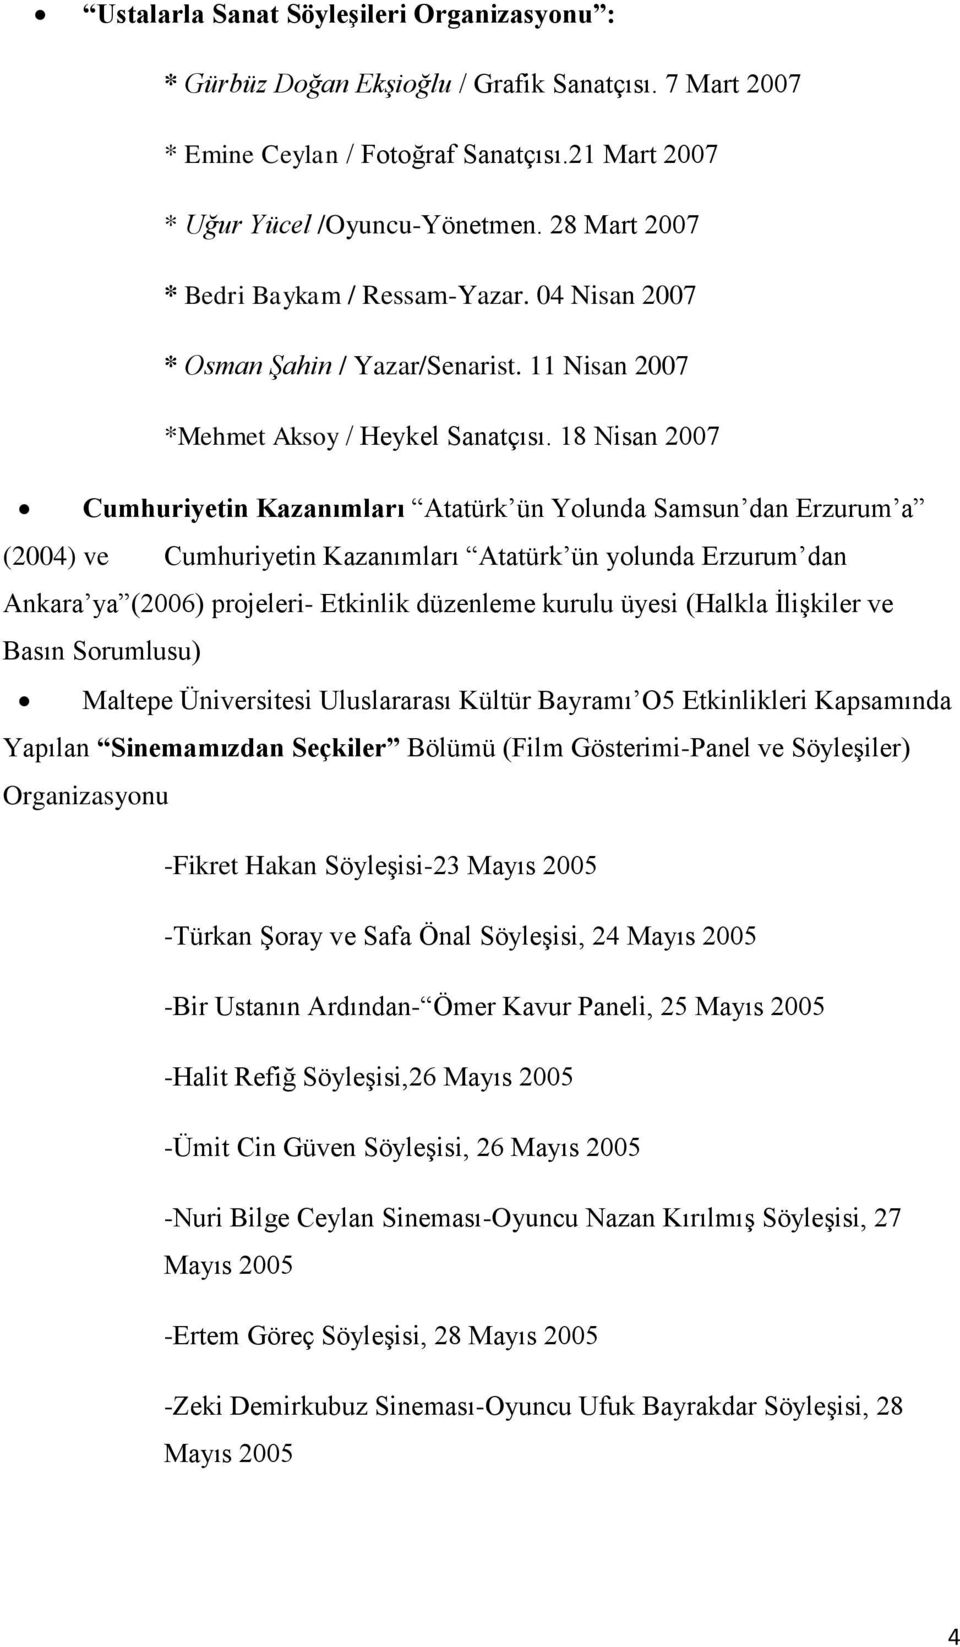 18 Nisan 2007 Cumhuriyetin Kazanımları Atatürk ün Yolunda Samsun dan Erzurum a (2004) ve Cumhuriyetin Kazanımları Atatürk ün yolunda Erzurum dan Ankara ya (2006) projeleri- Etkinlik düzenleme kurulu